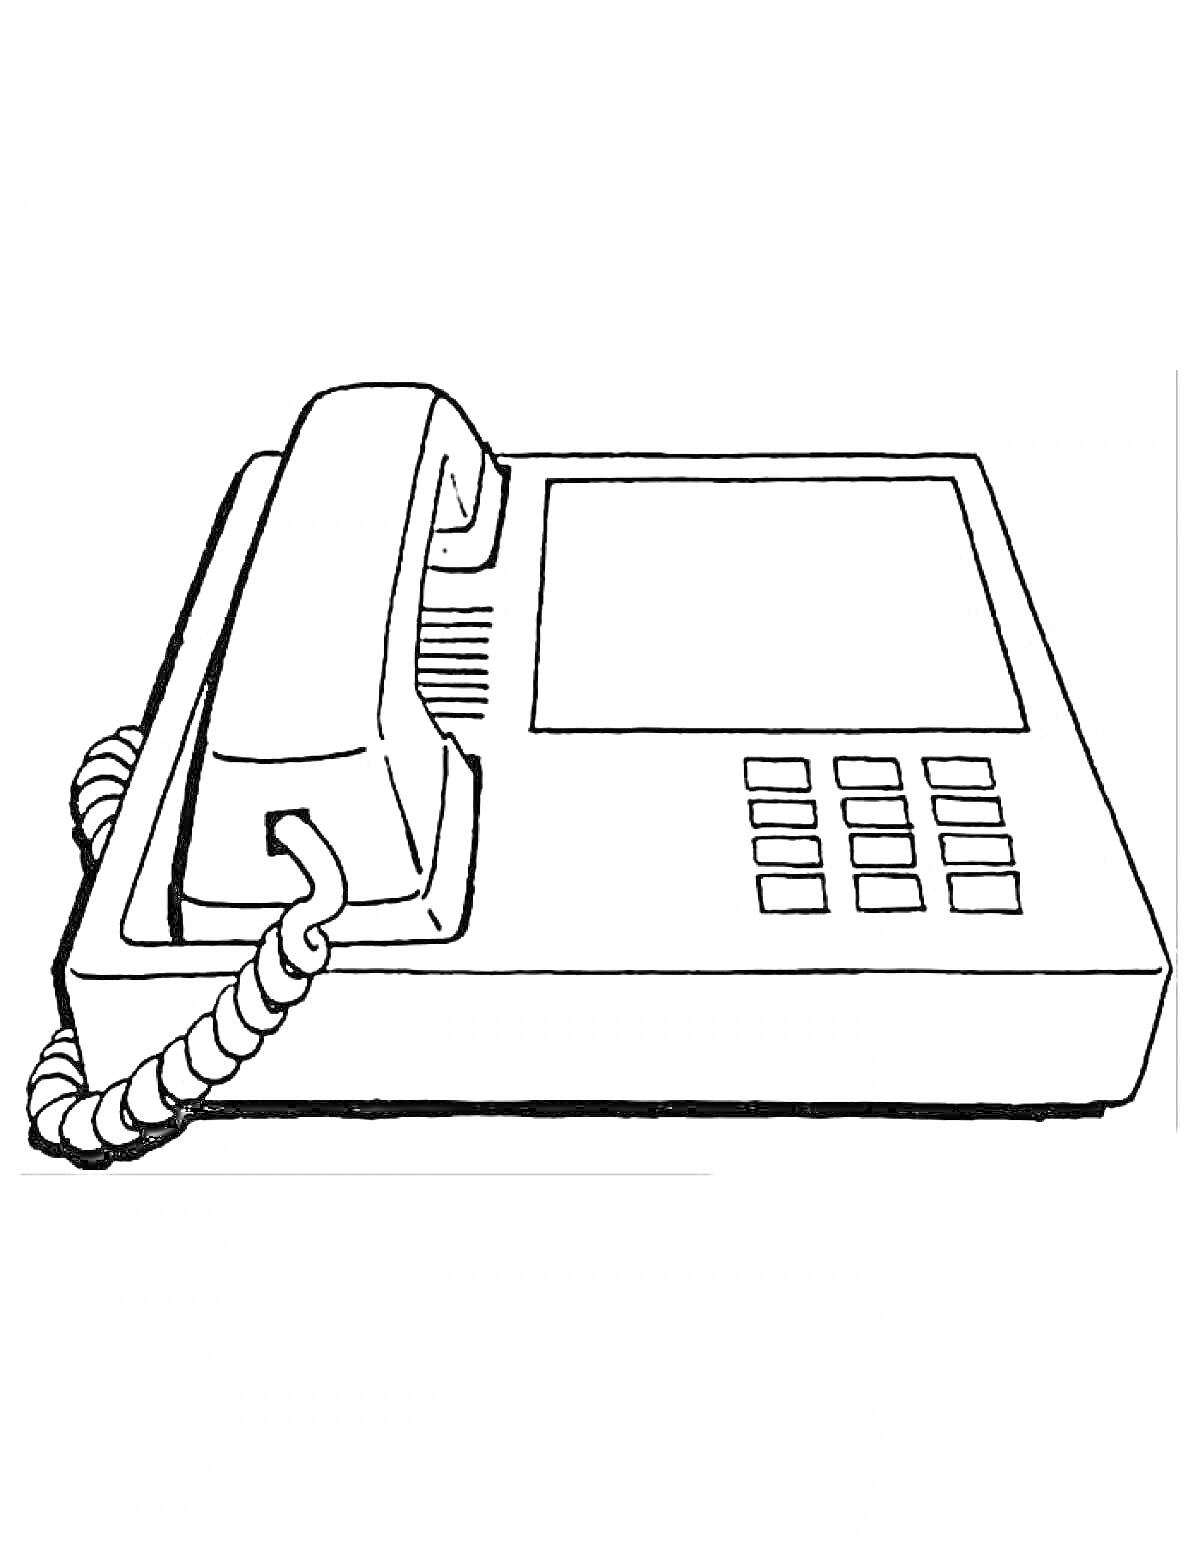 Раскраска Телефон со снятой трубкой, экраном и кнопками